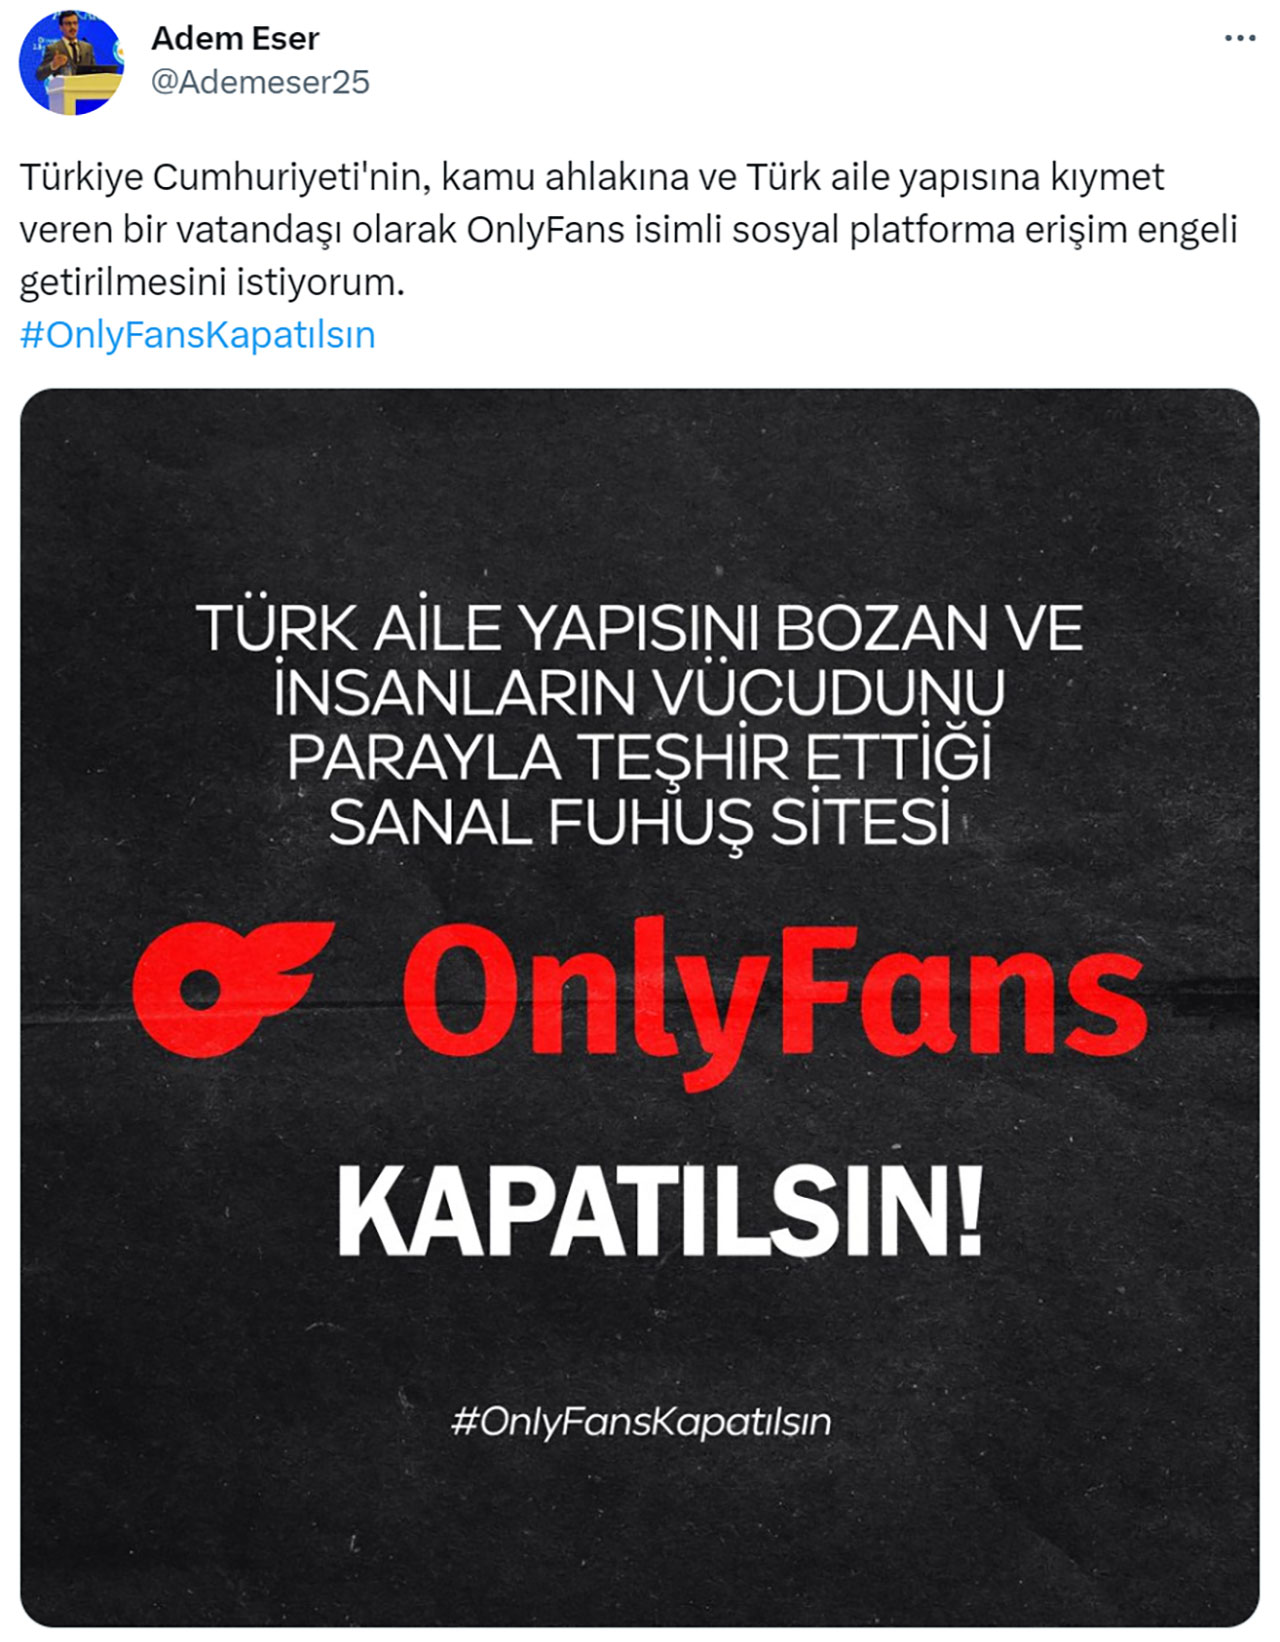 Meral Erden: Twitter'da OnlyFans'ın Kapanması İçin "Kampanya" Başlatıldı - Webtekno 11